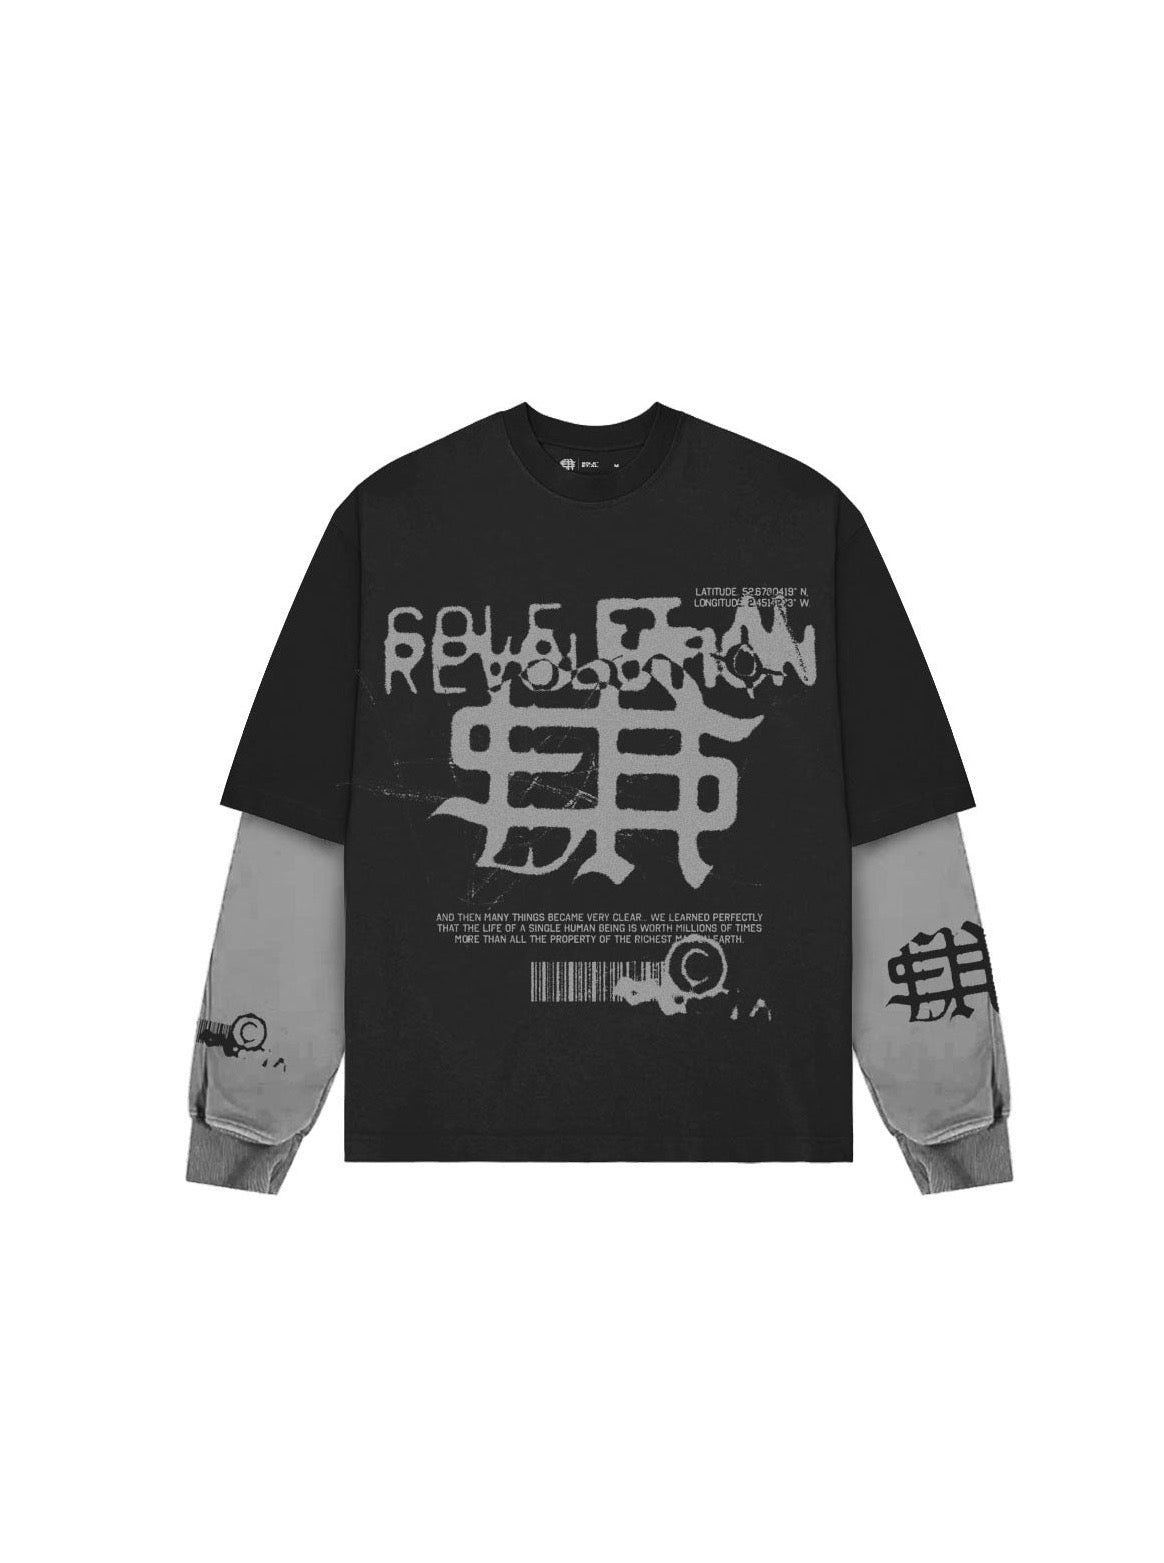 Sole et. Al Revølutiøn Camiseta Manga Larga Doble Capa : Negro / Gris Lavado